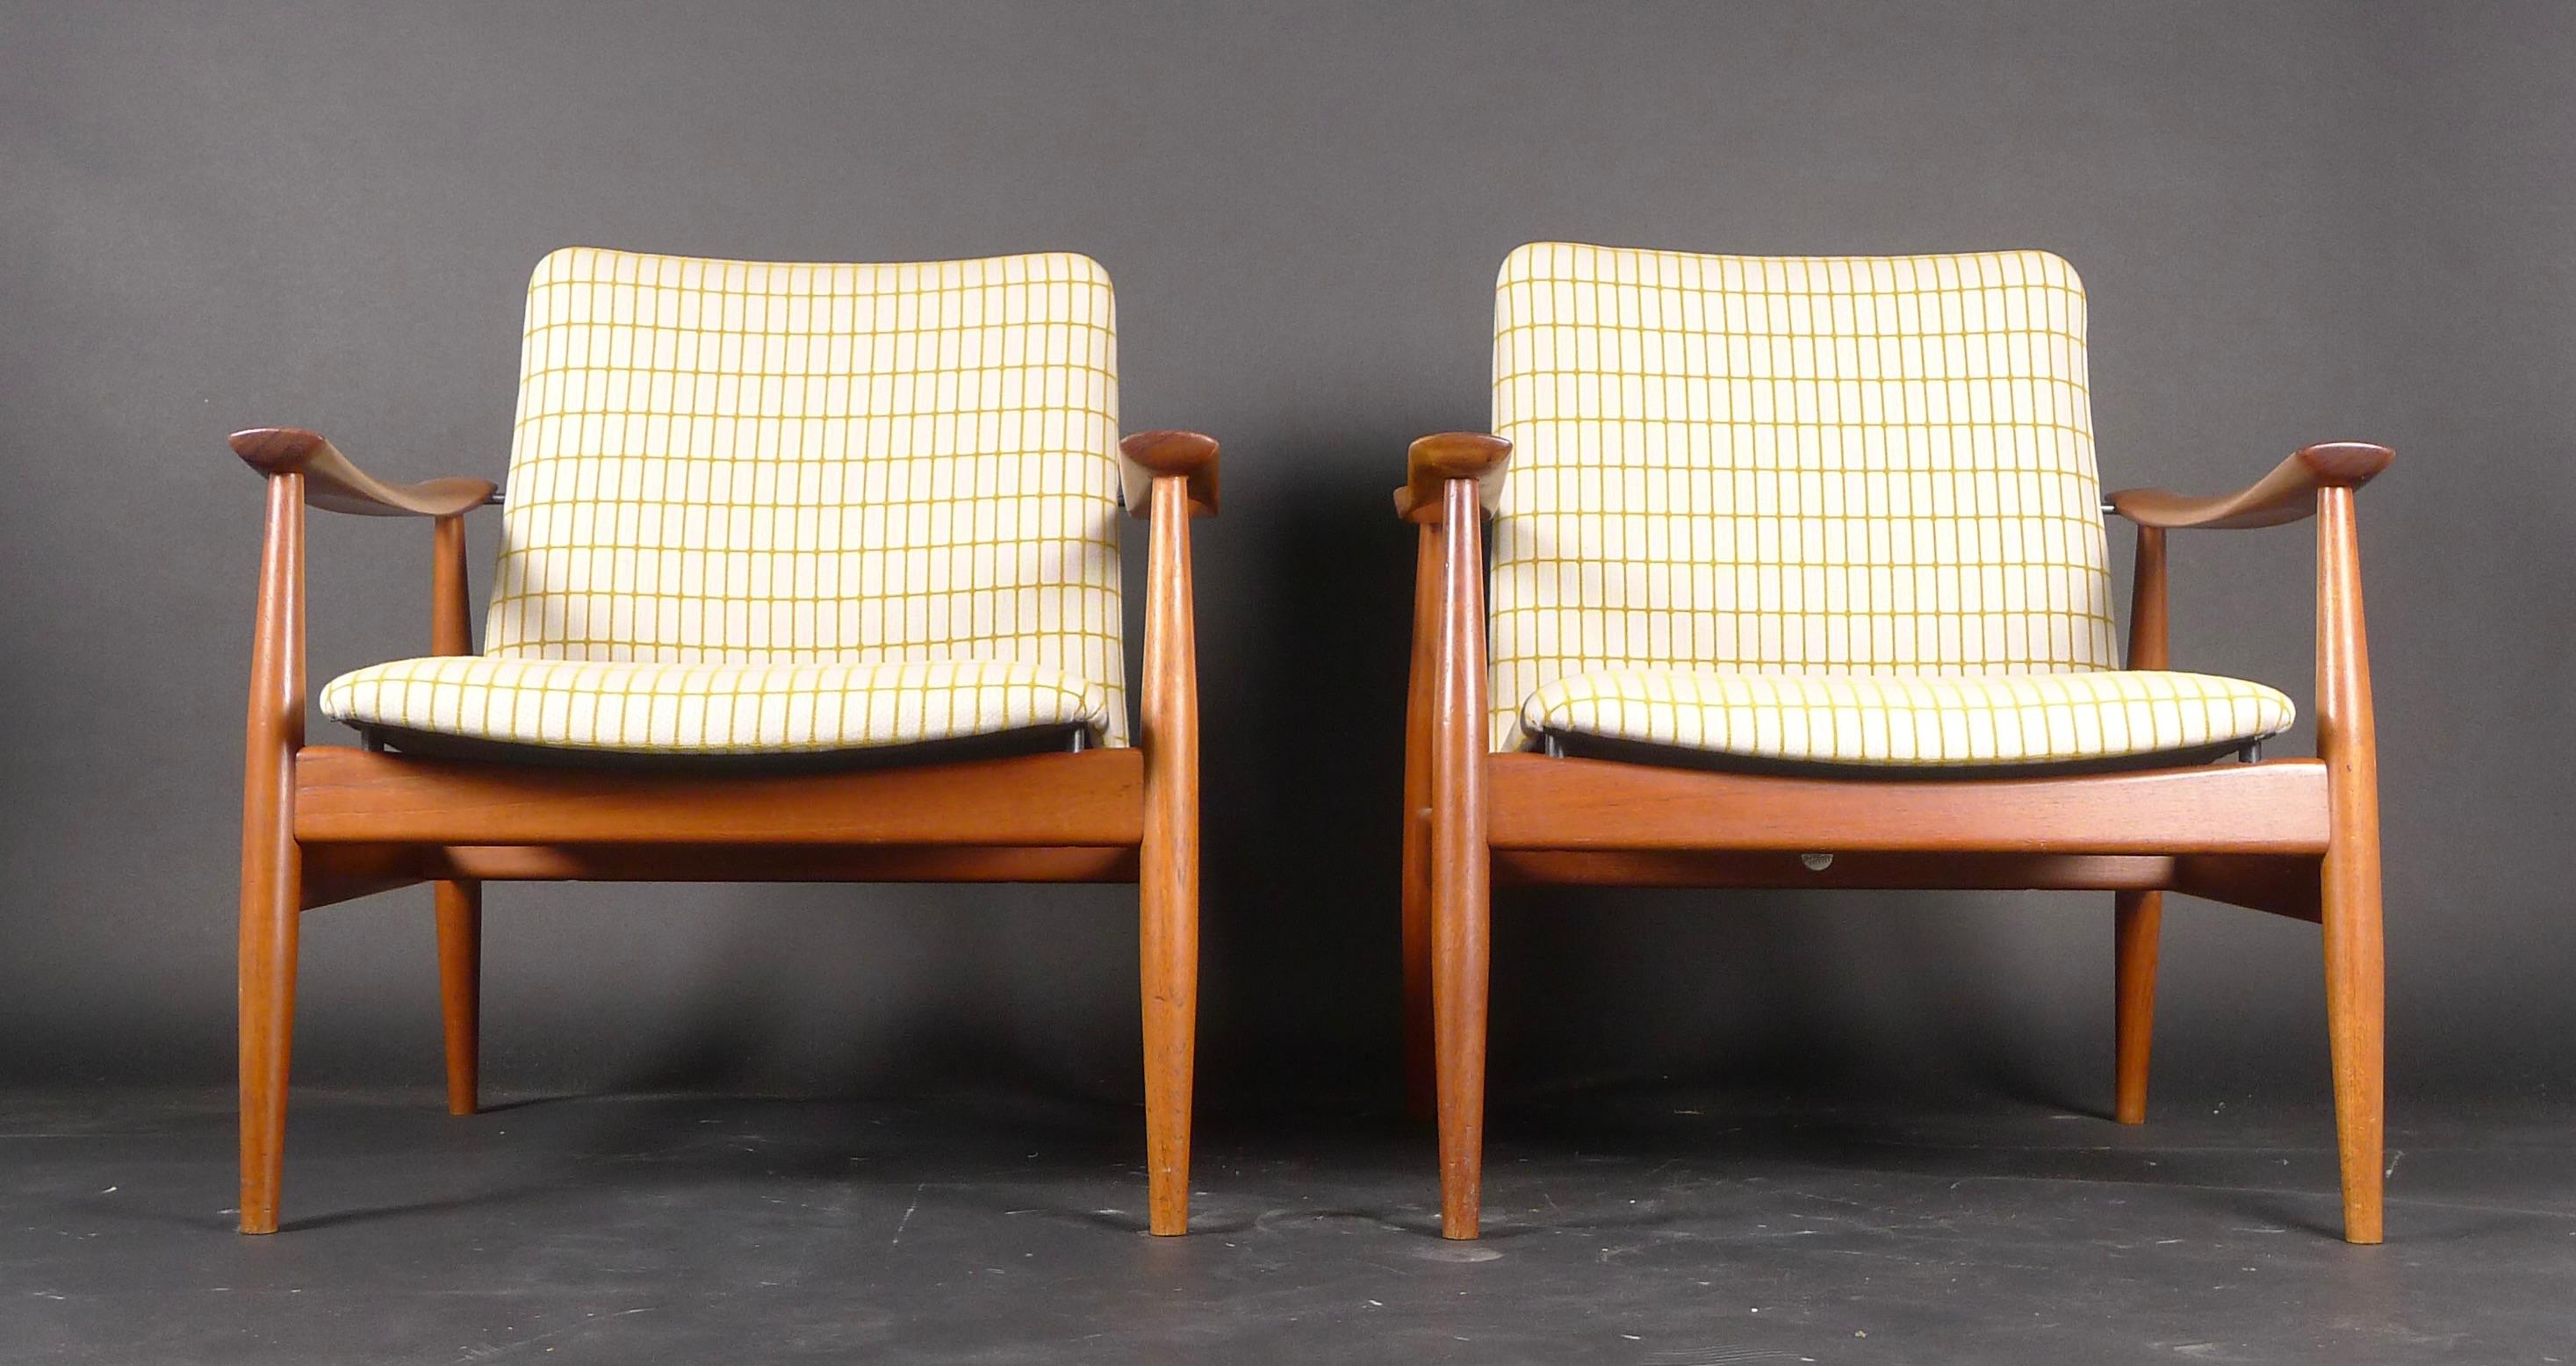 Danish Finn Juhl, Pair of Teak Easy Chairs, Model Fd138, France & Son, 1959 For Sale